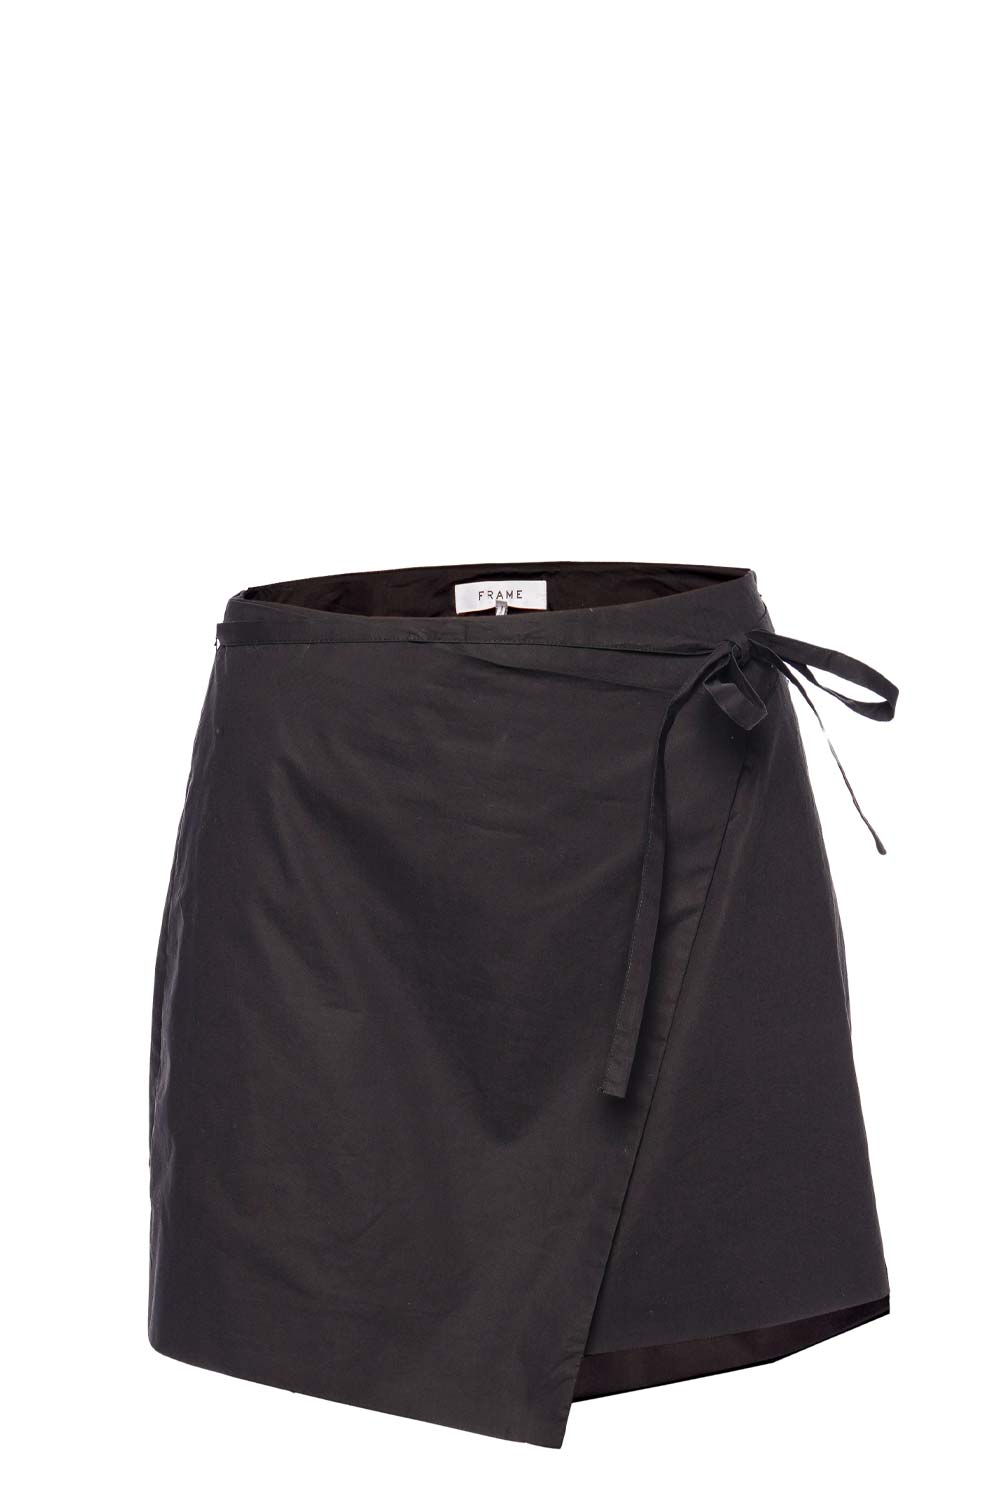 FRAME Black Wrap Mini Skirt